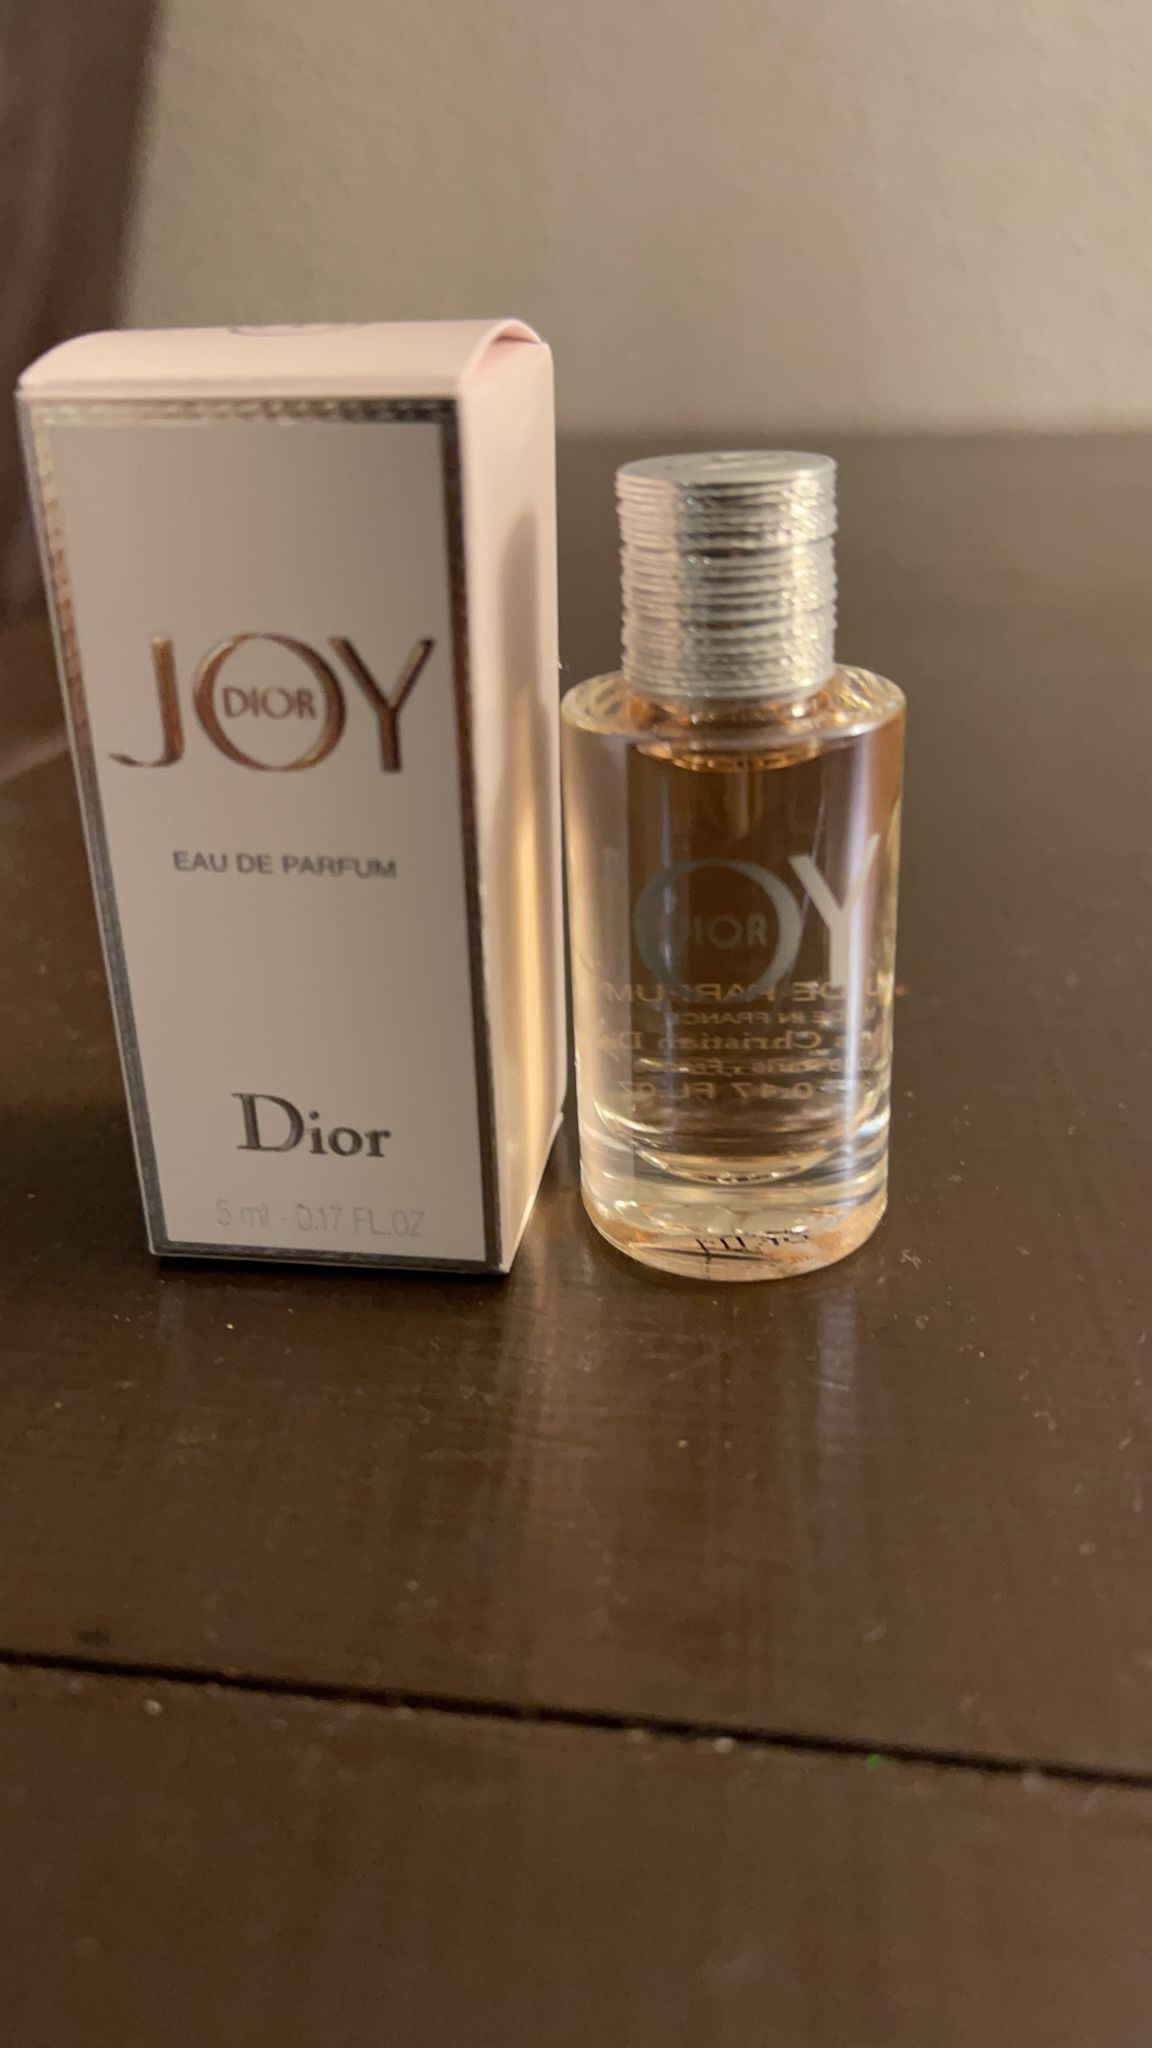 Dior joy&jadore